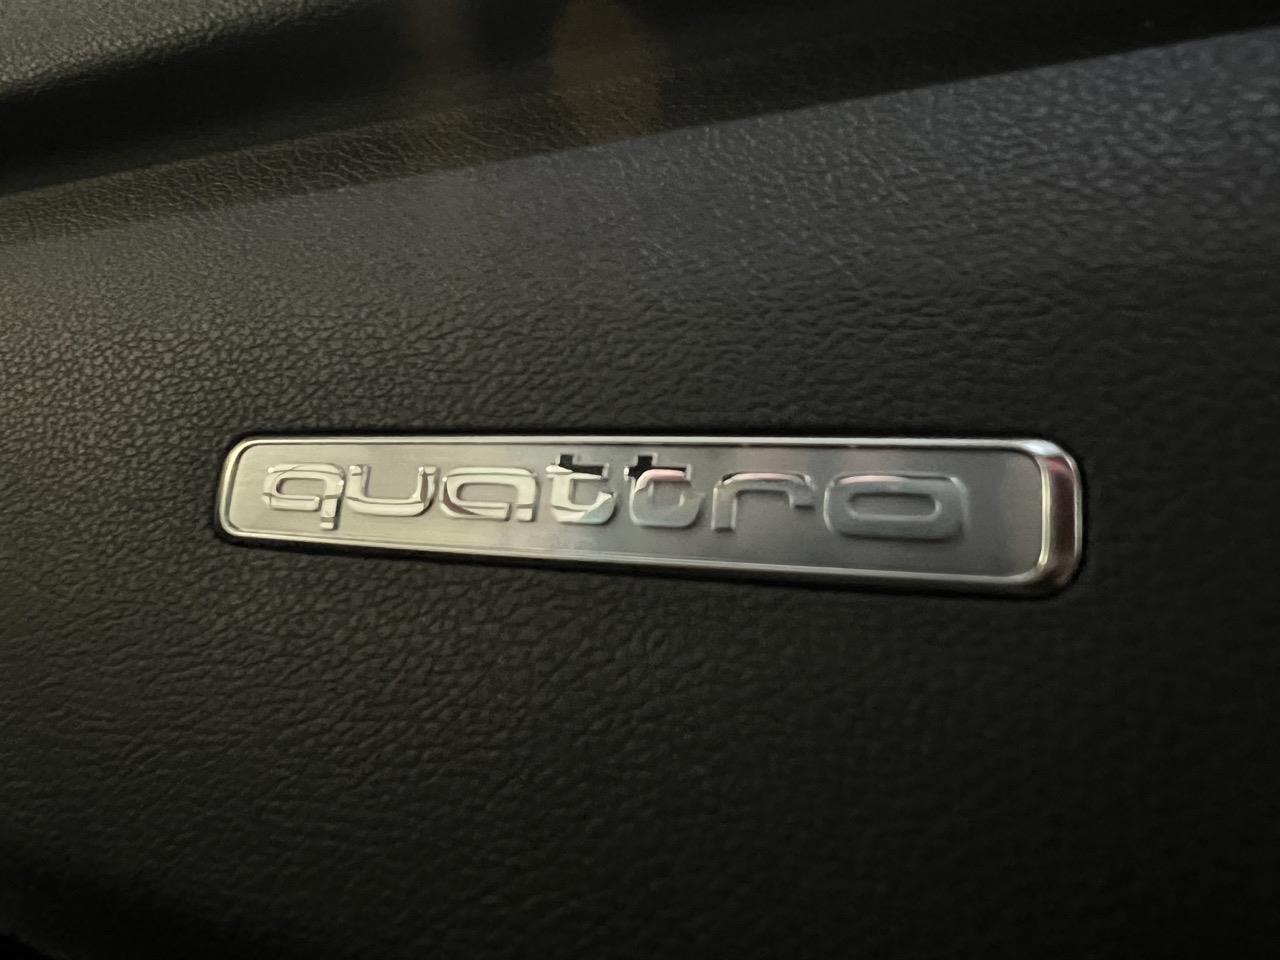 2014 Audi S1